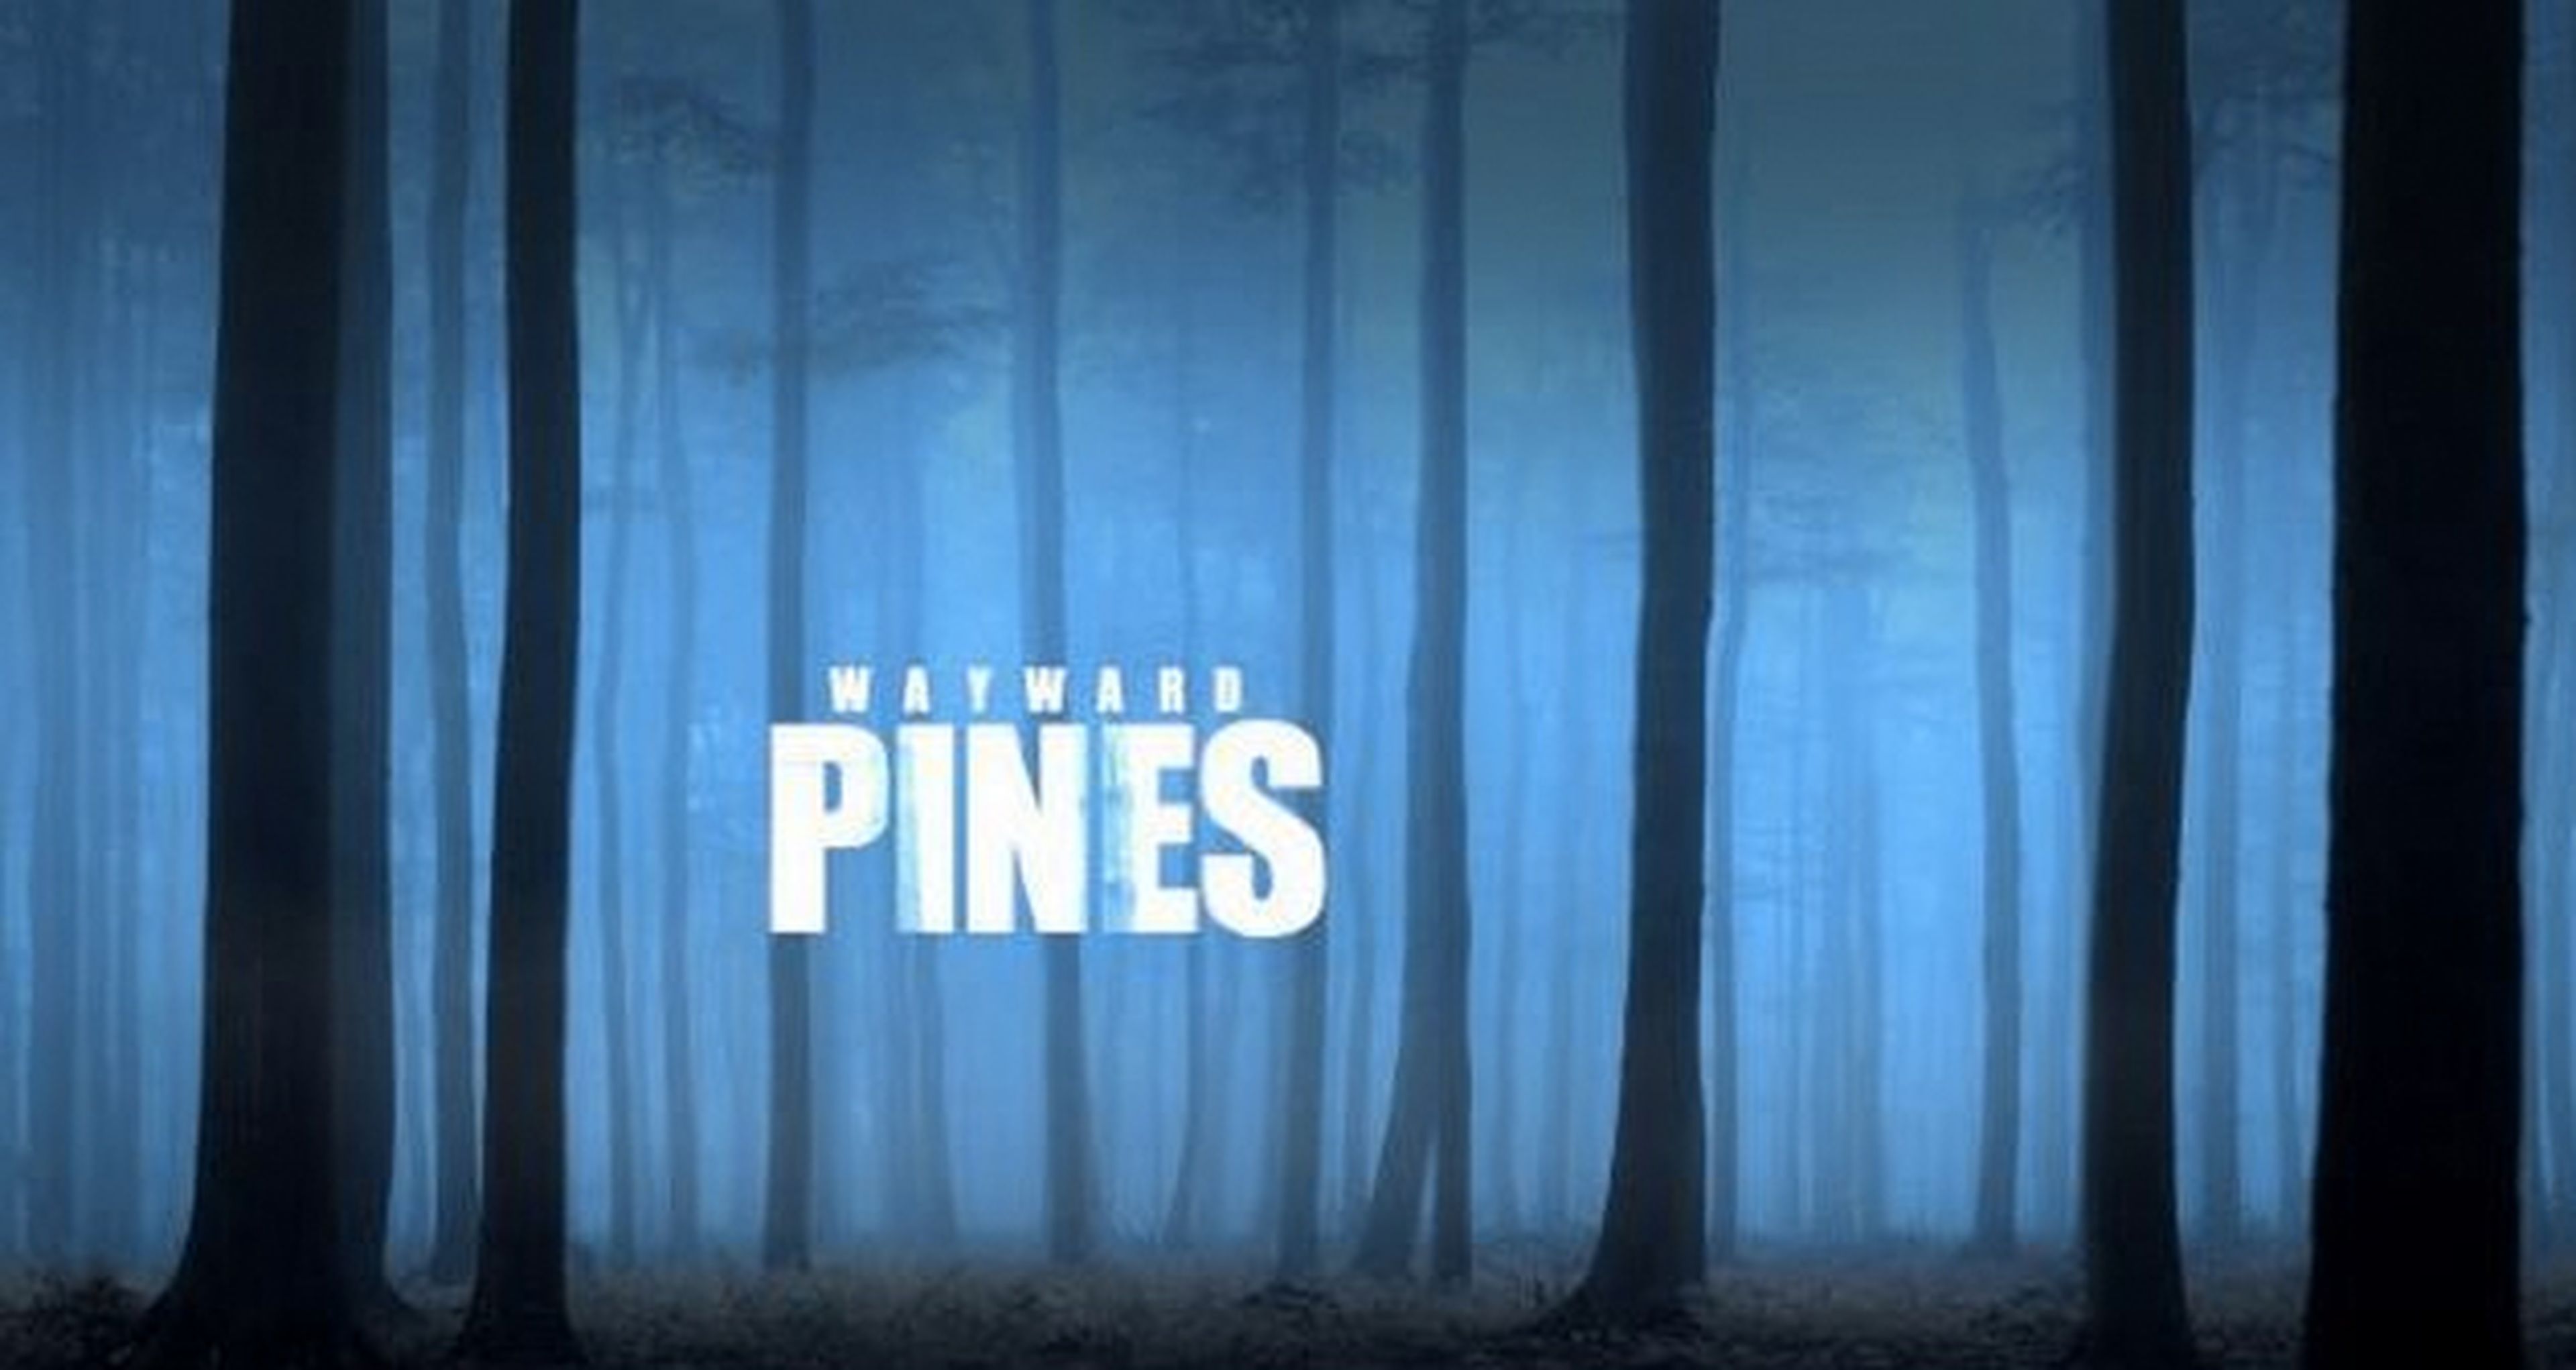 Wayward Pines, la serie de Shyamalan para Fox, anuncia su reparto